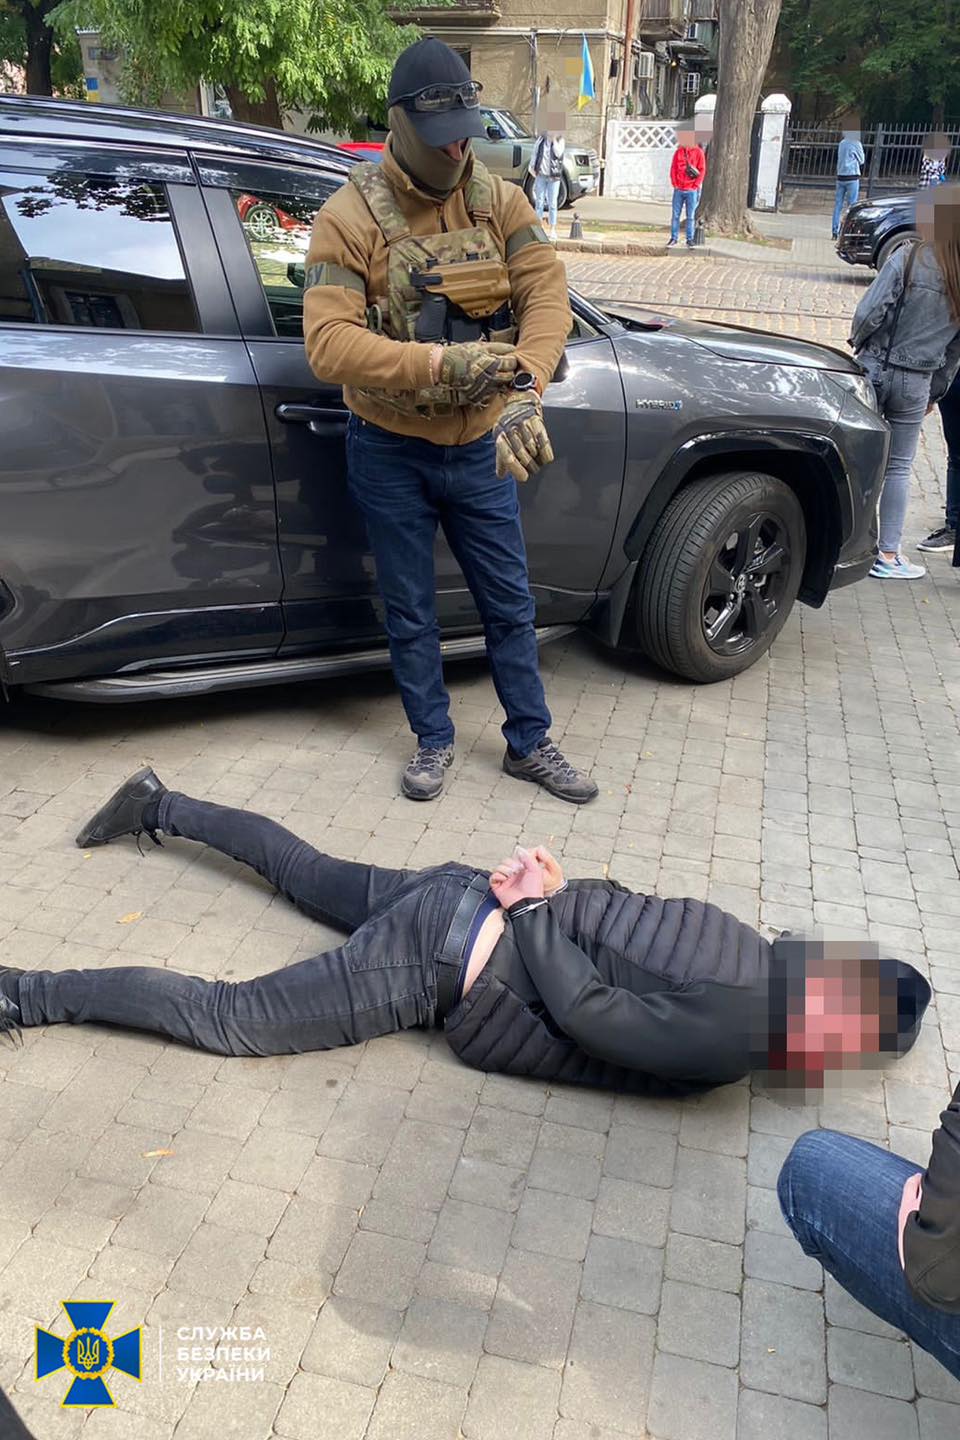 Среди задержанных – действующий правоохранитель Одесской области: СБУ обезвредила группировку подсанкционного «вора в законе» по прозвищу «Антимос»